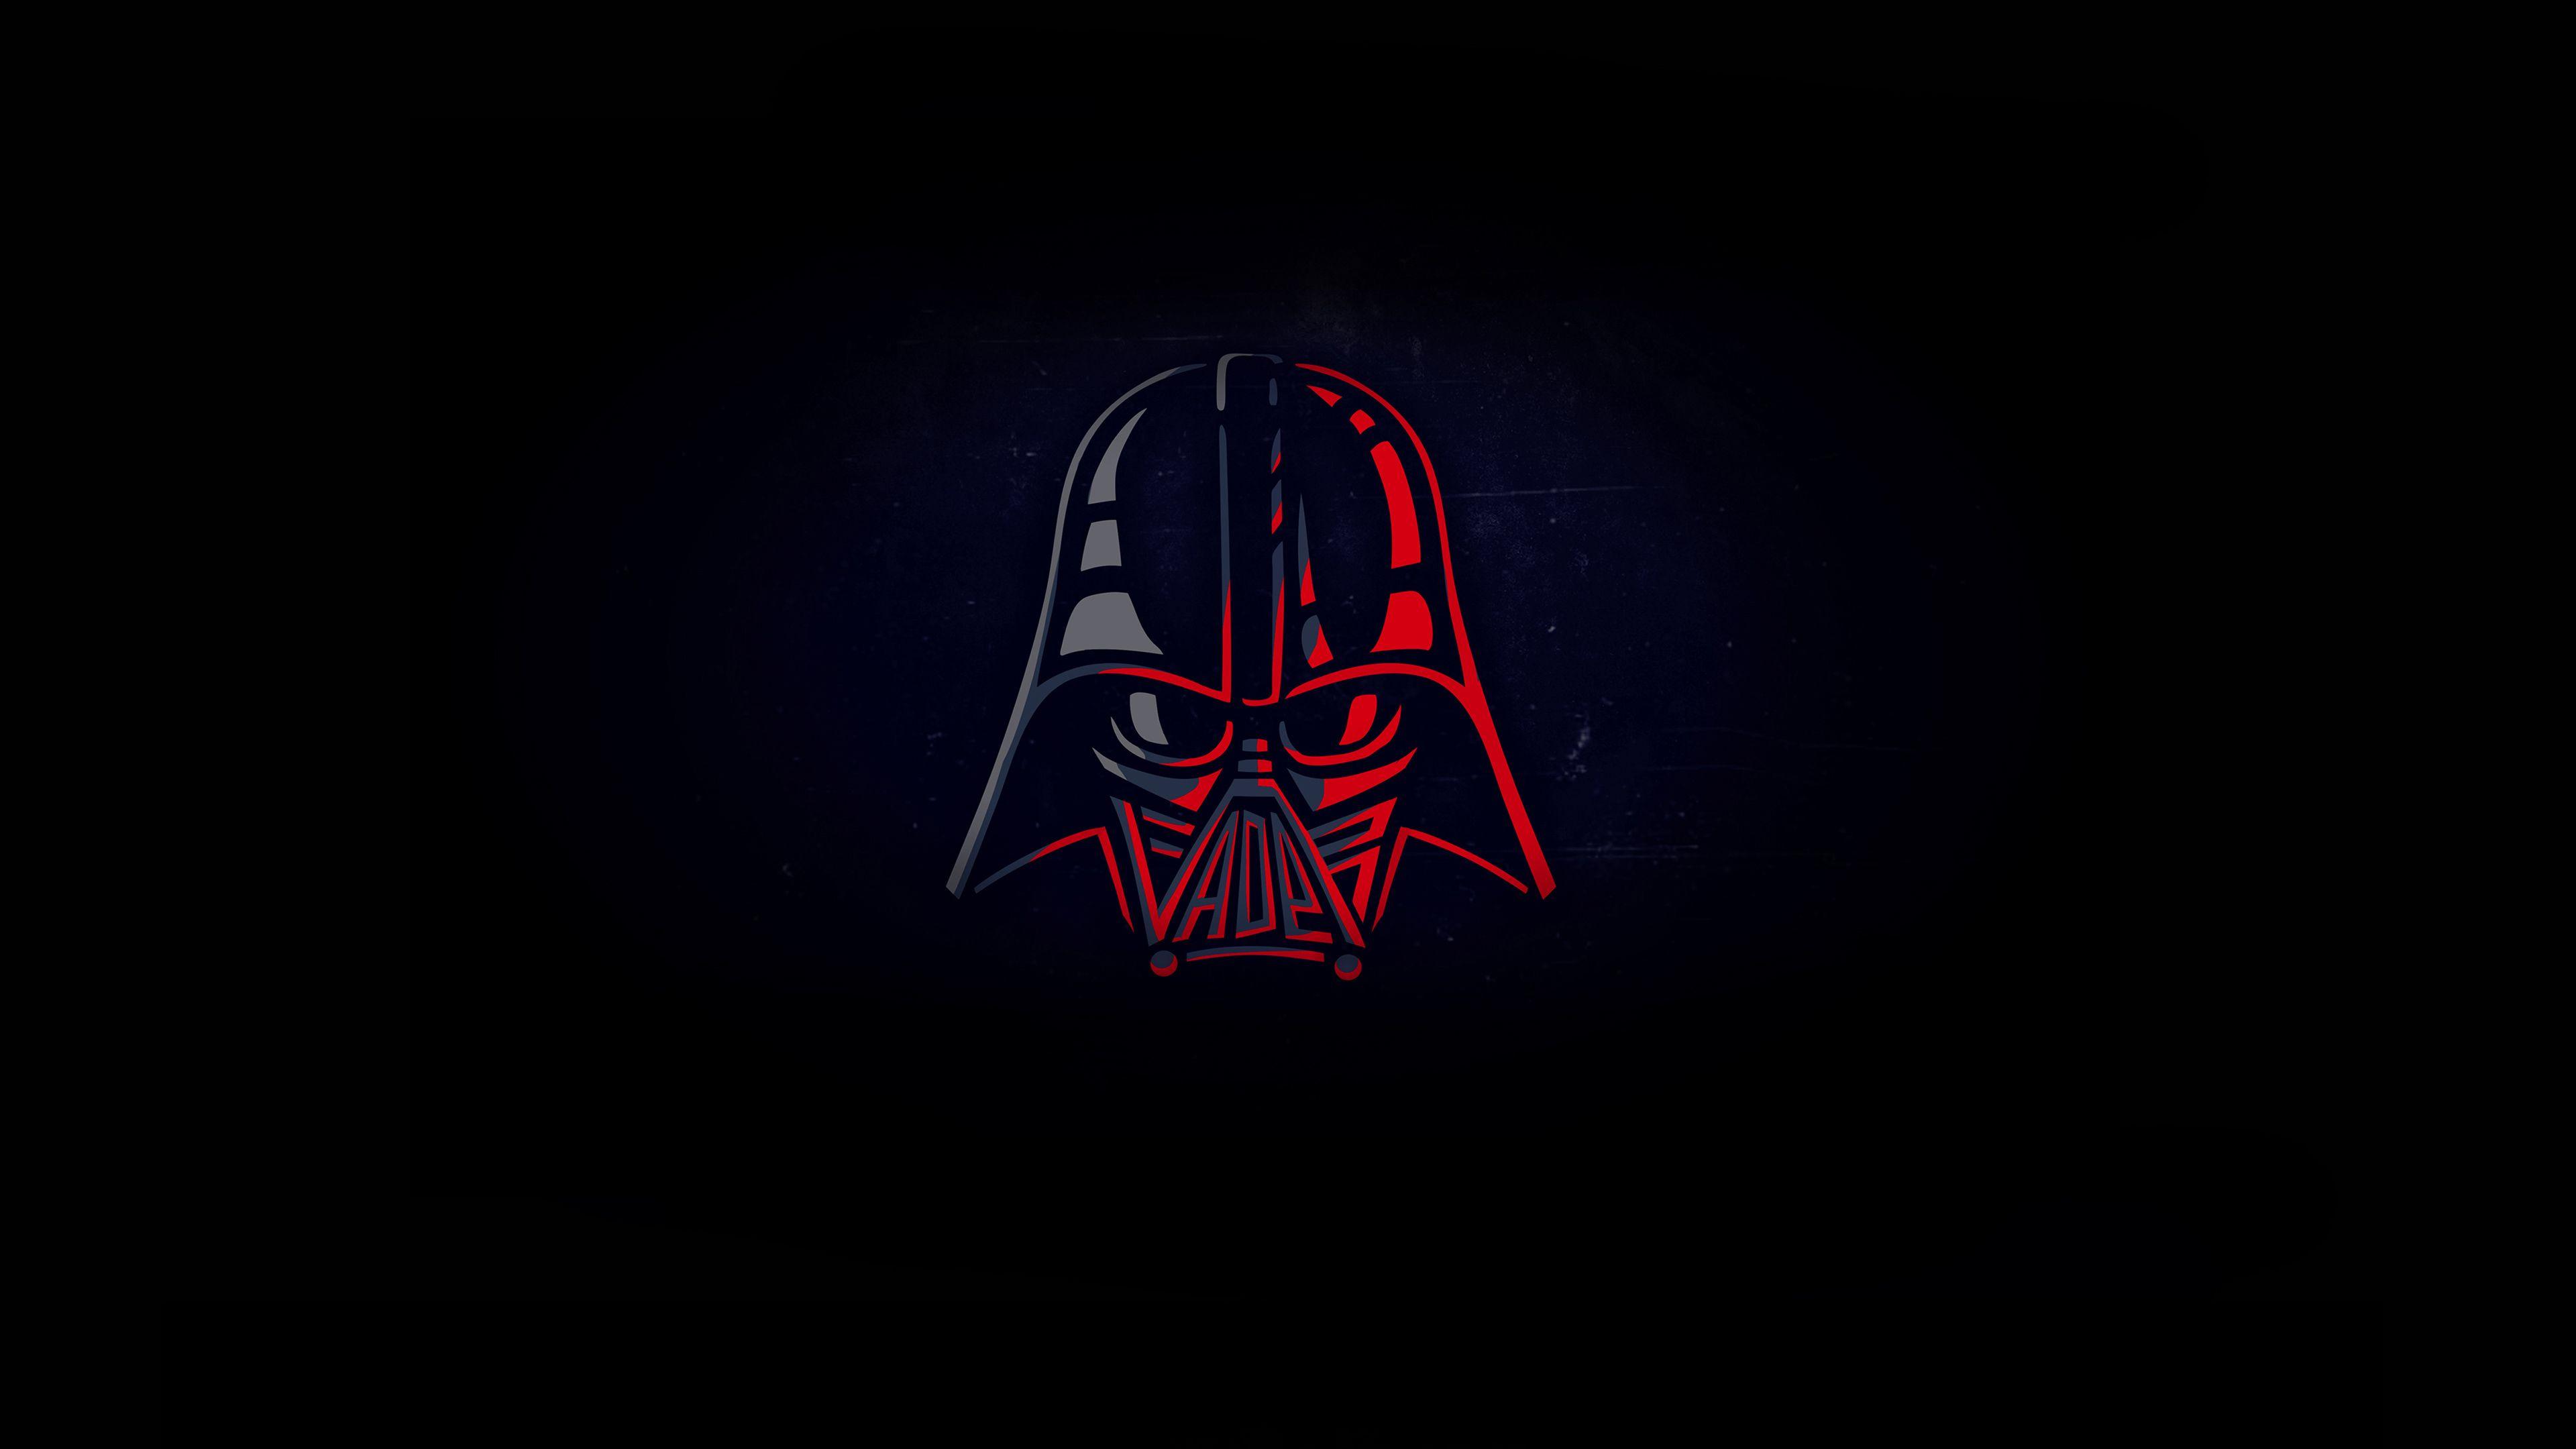 Darth Vader Minimal 4k Star Wars Wallpaper, Minimalist Wallpaper, Minimalism Wallpaper, Hd Wallpaper,. Darth Vader Wallpaper, Star Wars Wallpaper, Darth Vader